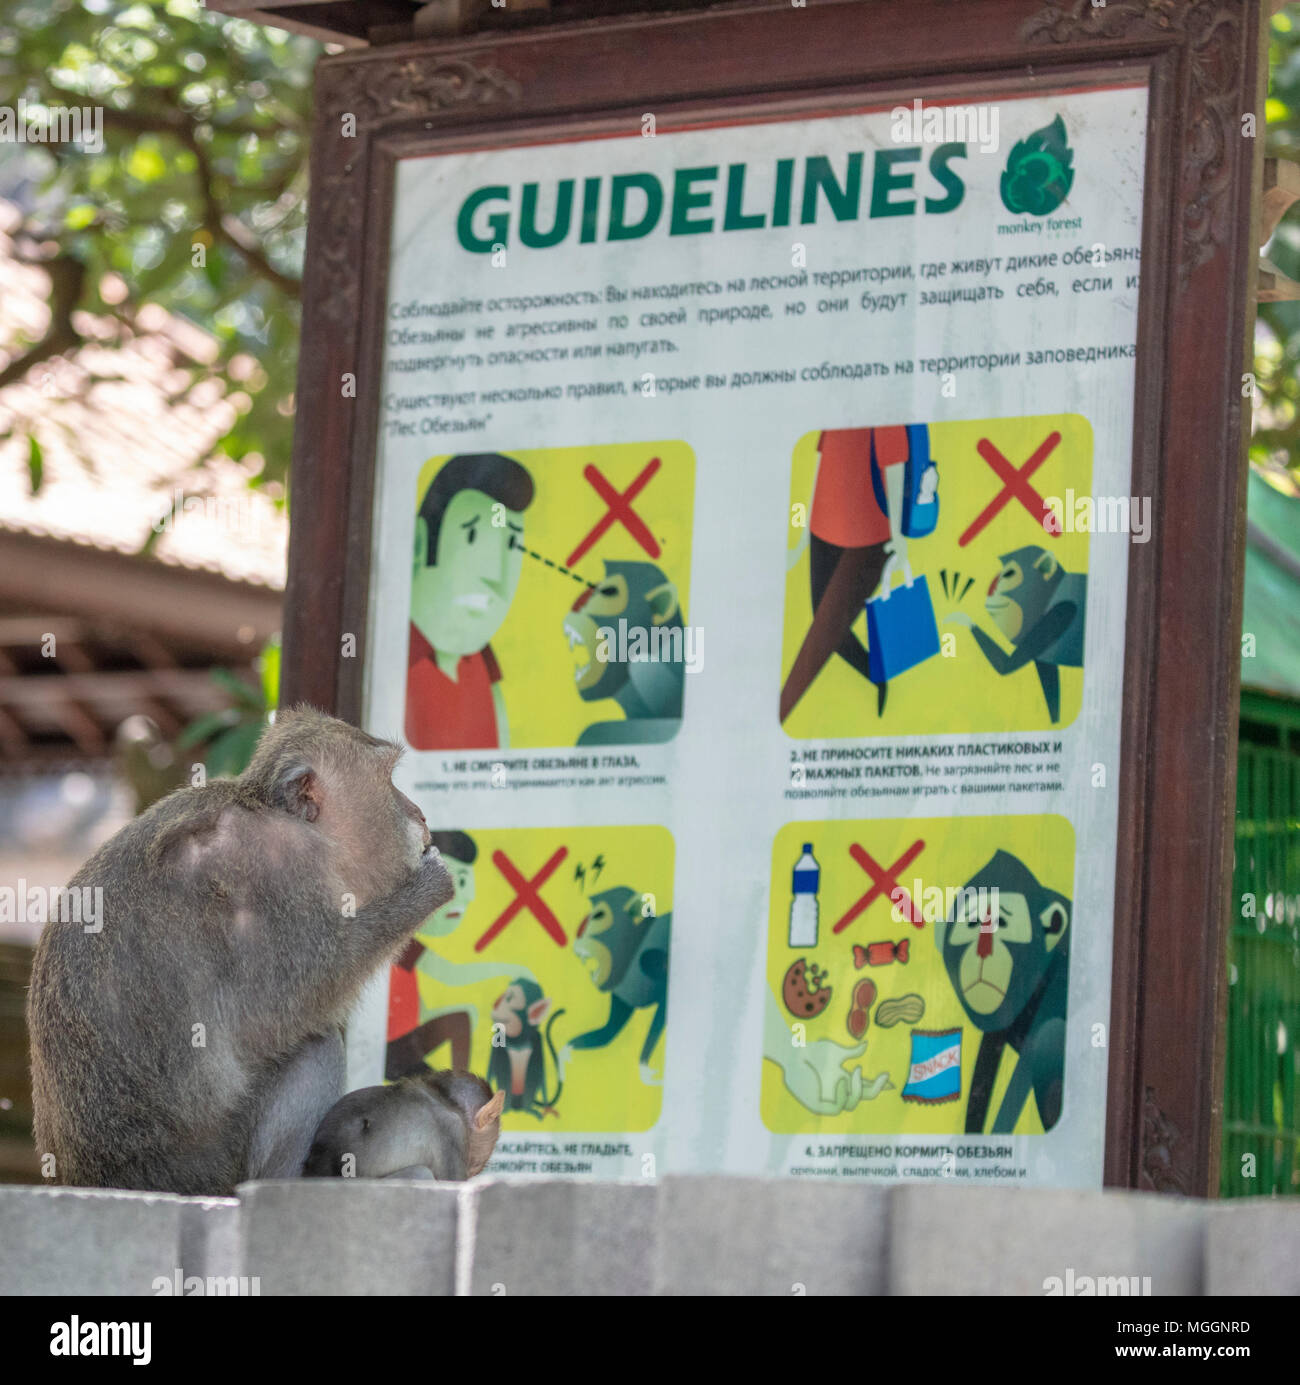 Monkey apparendo a leggere le linee guida per i turisti sulle interazioni con gli animali, Ubud, Bali, Indonesia Foto Stock